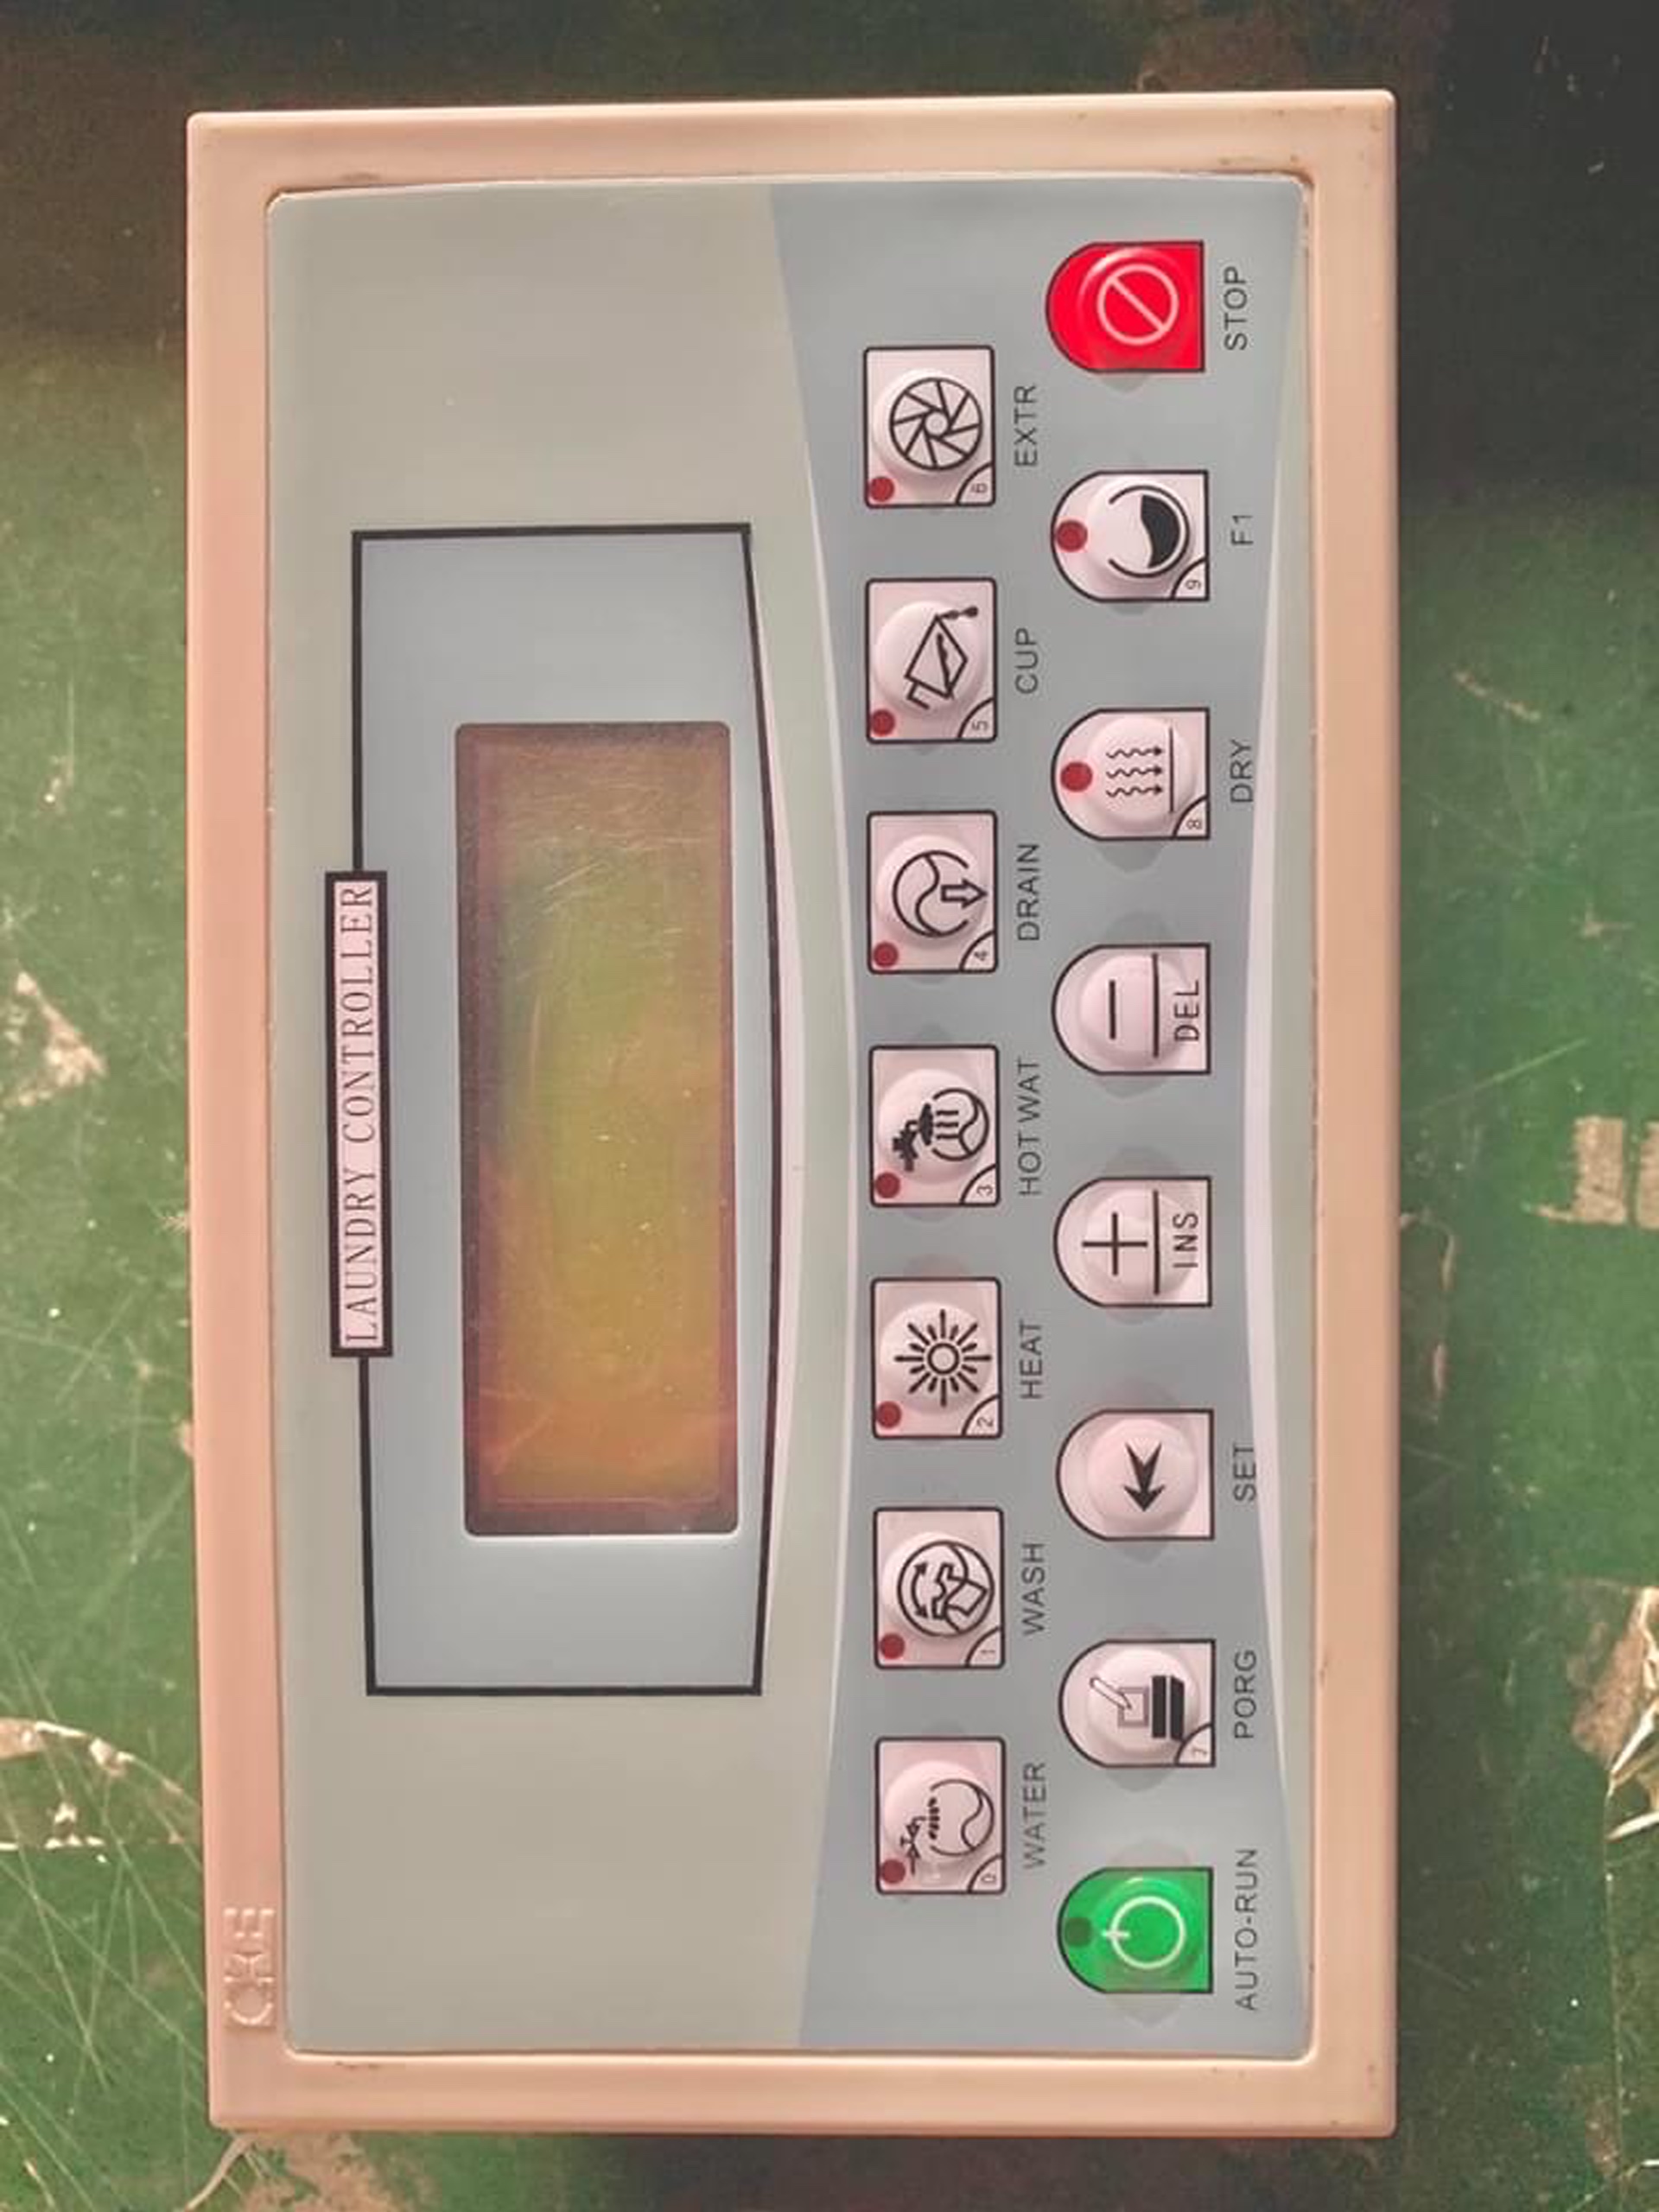 Bộ màn hình điều khiển dùng cho máy giặt công nghiệp, nhận sửa chửa bảo hành bộ điều khiển điện cho máy giặt công nghiệp các loại